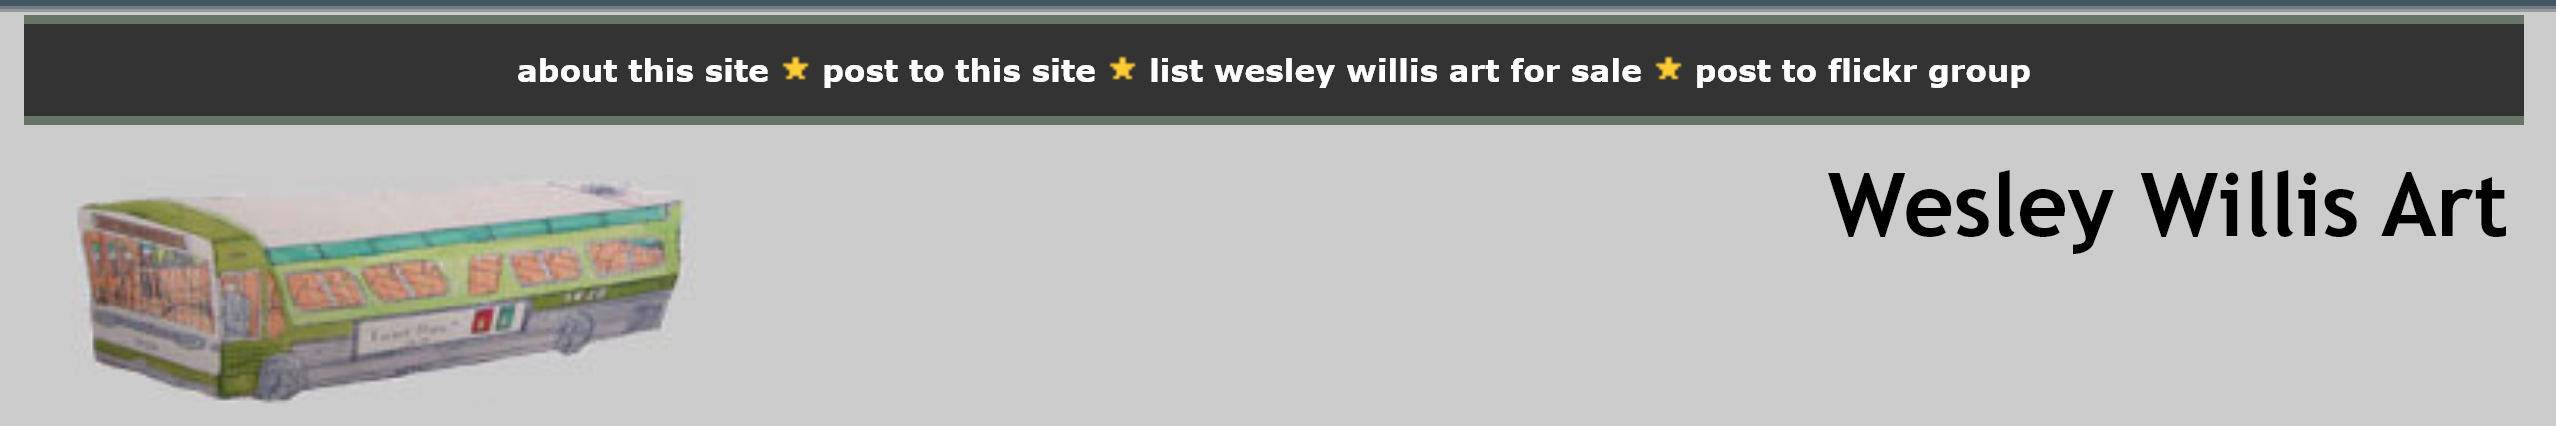 Wesley Willis Art website header